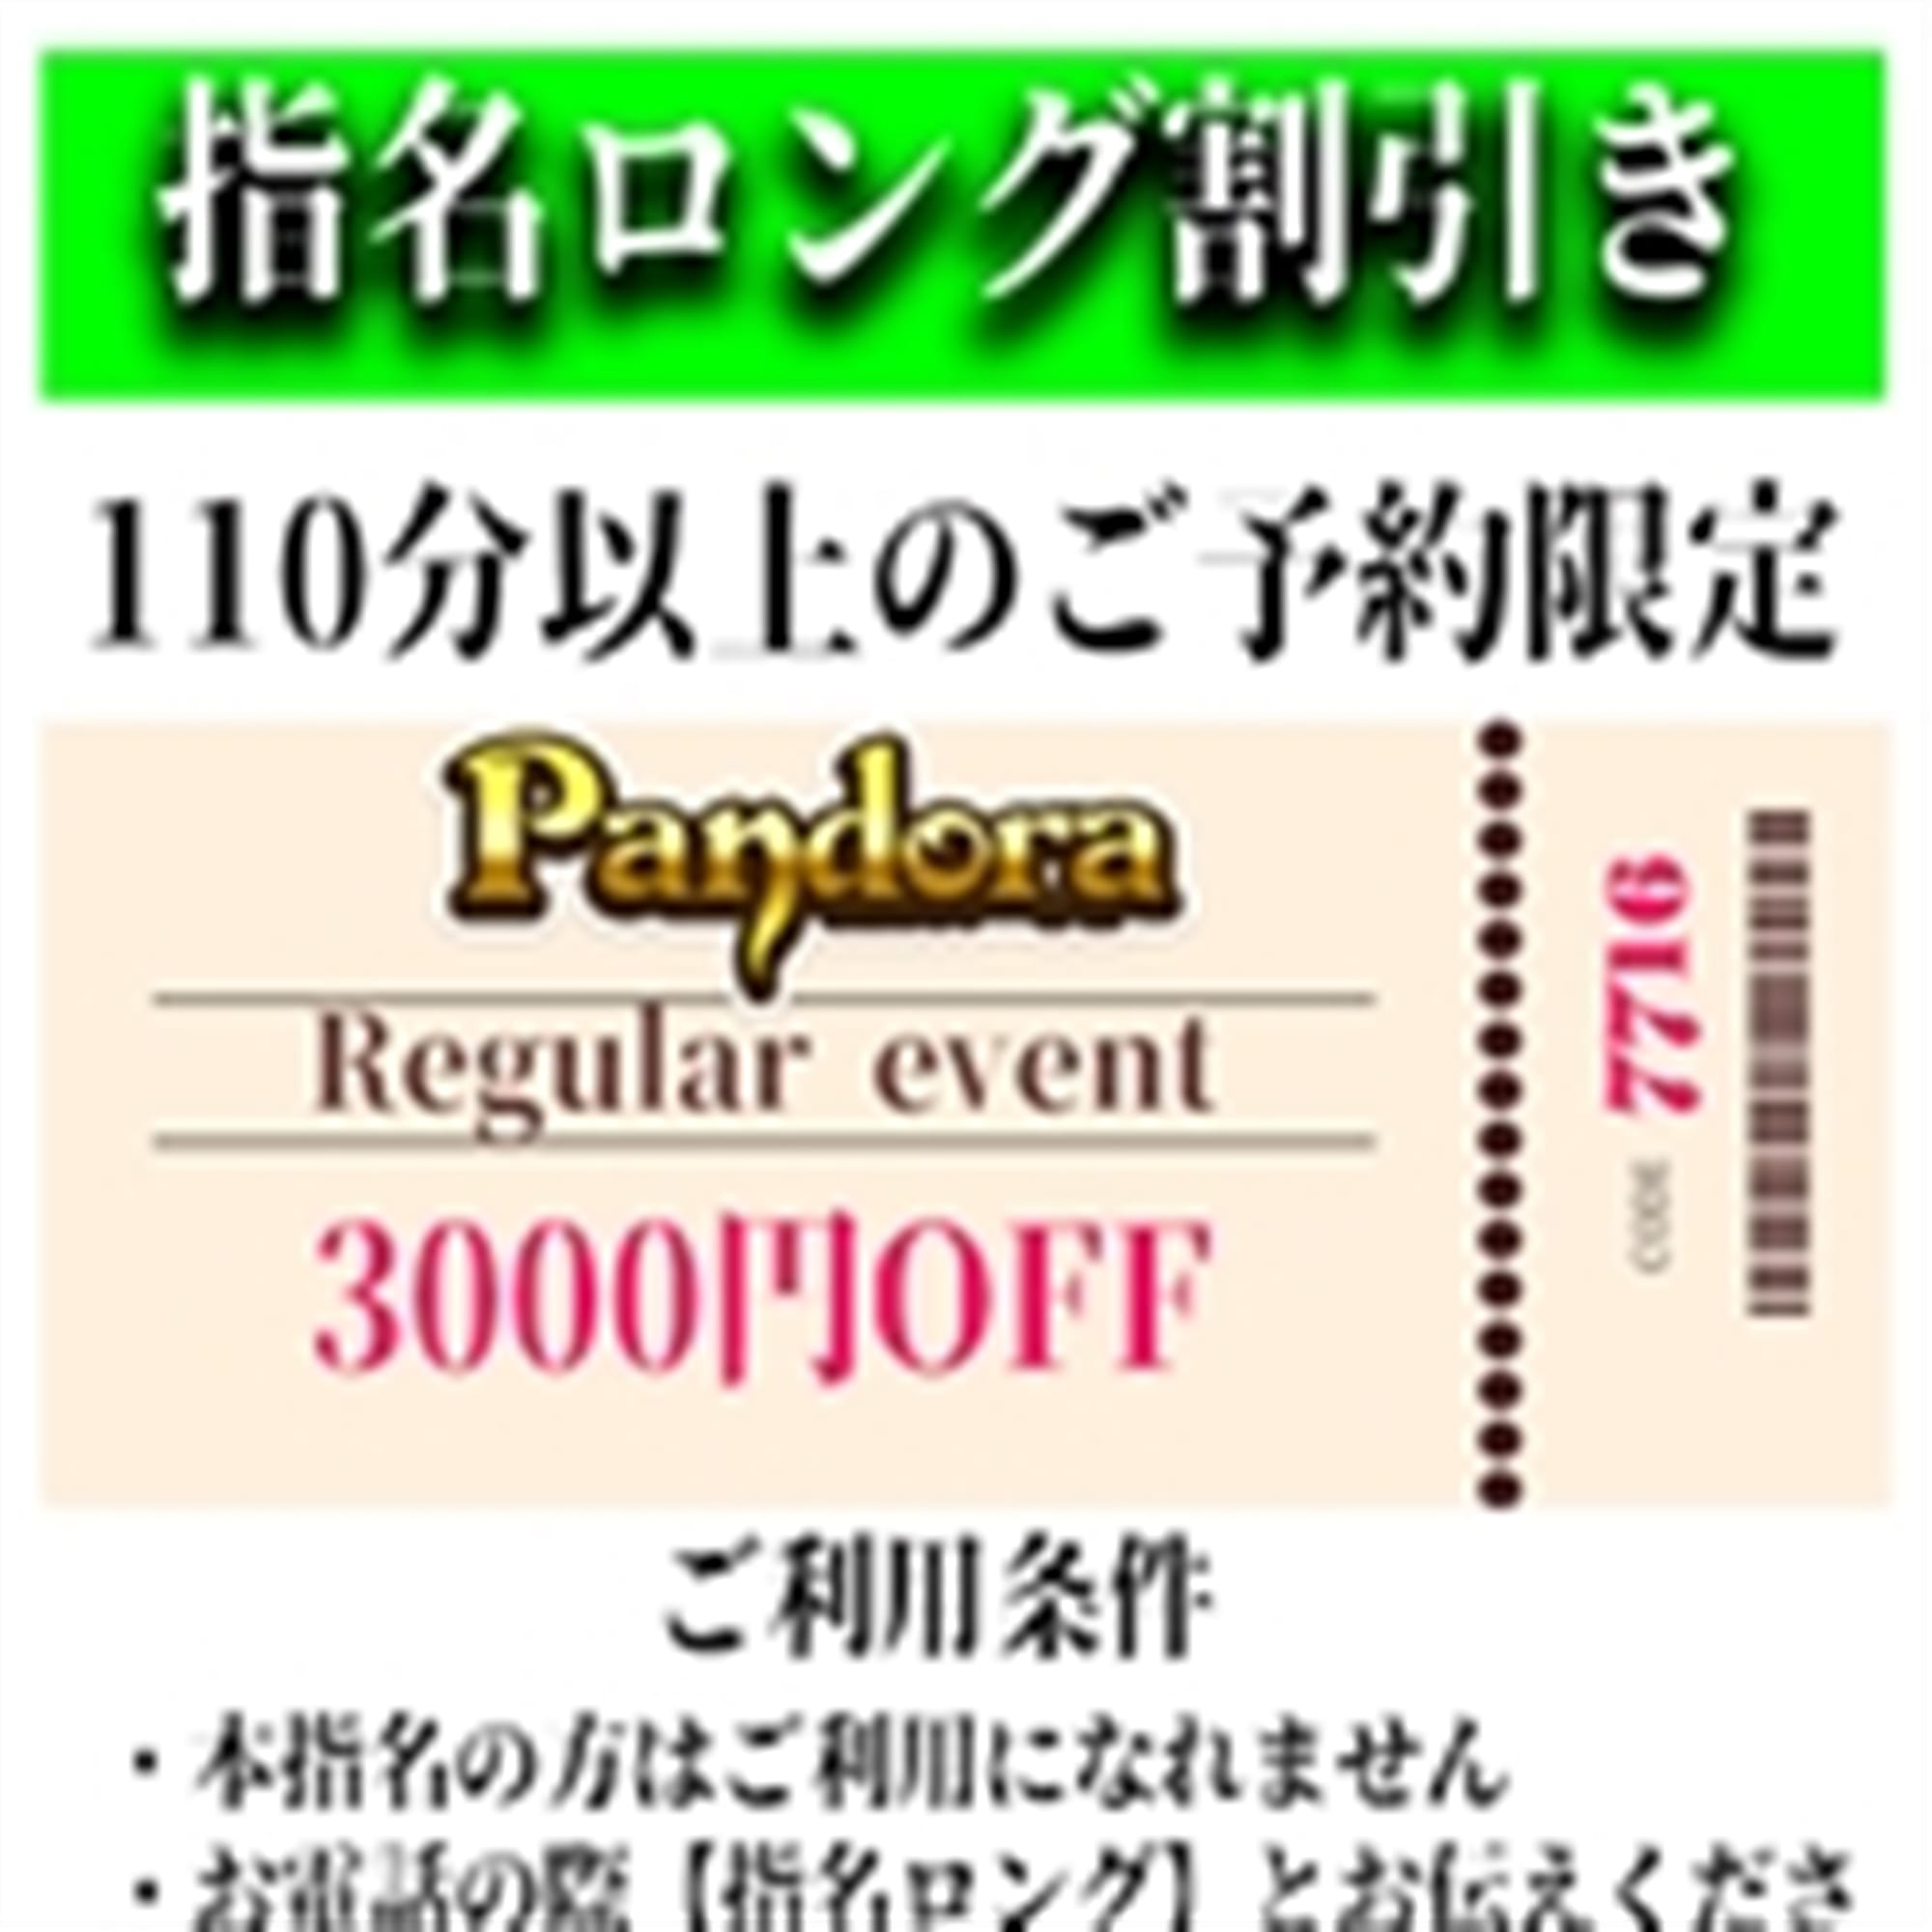 「ご指名のお客様も遊べるロングコース割引」04/26(金) 23:07 | Pandora(パンドラ)新潟のお得なニュース